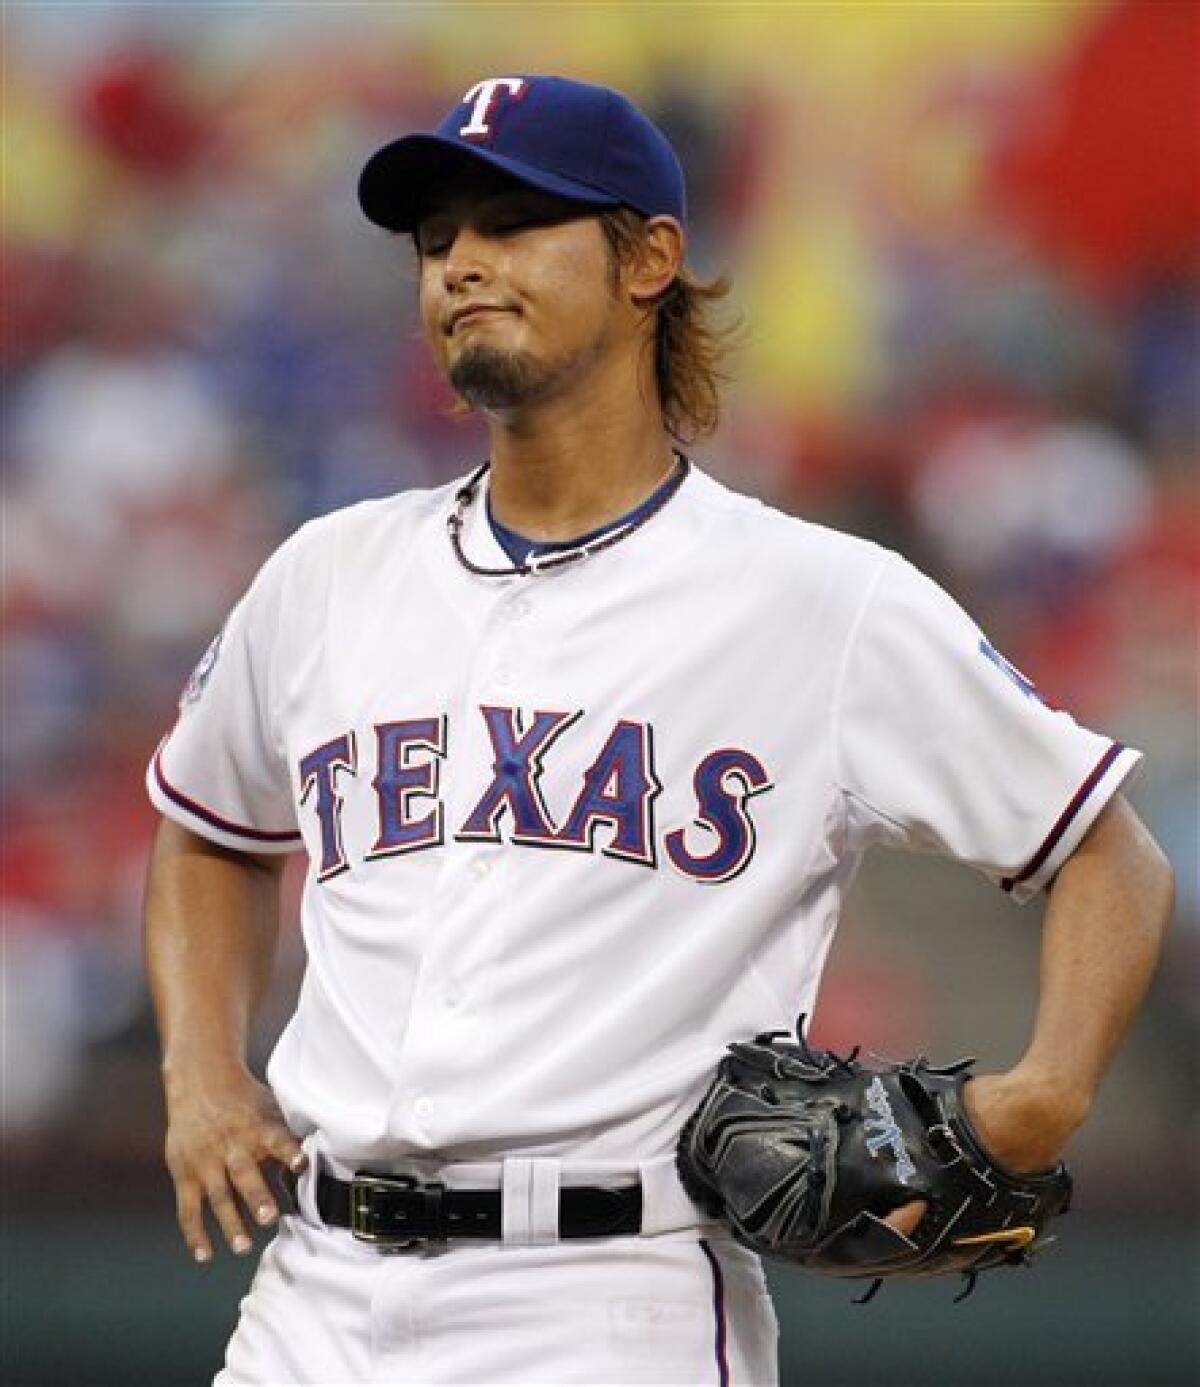 Yu Darvish (Rangers), MARCH 11, 2012 - MLB : Yu Darvish of the